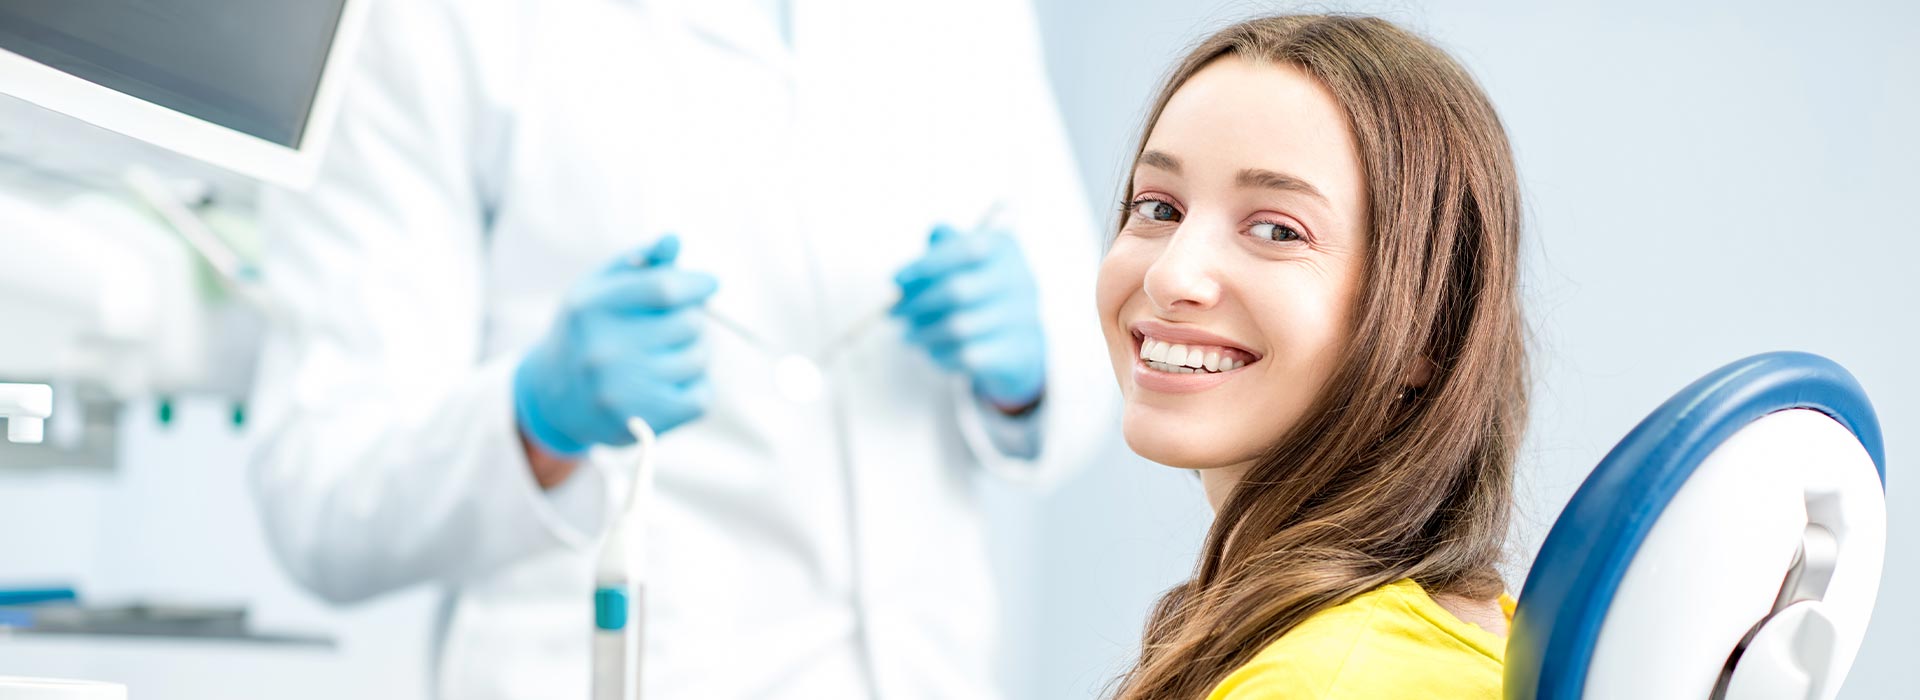 L'odontoiatria come branca della medicina